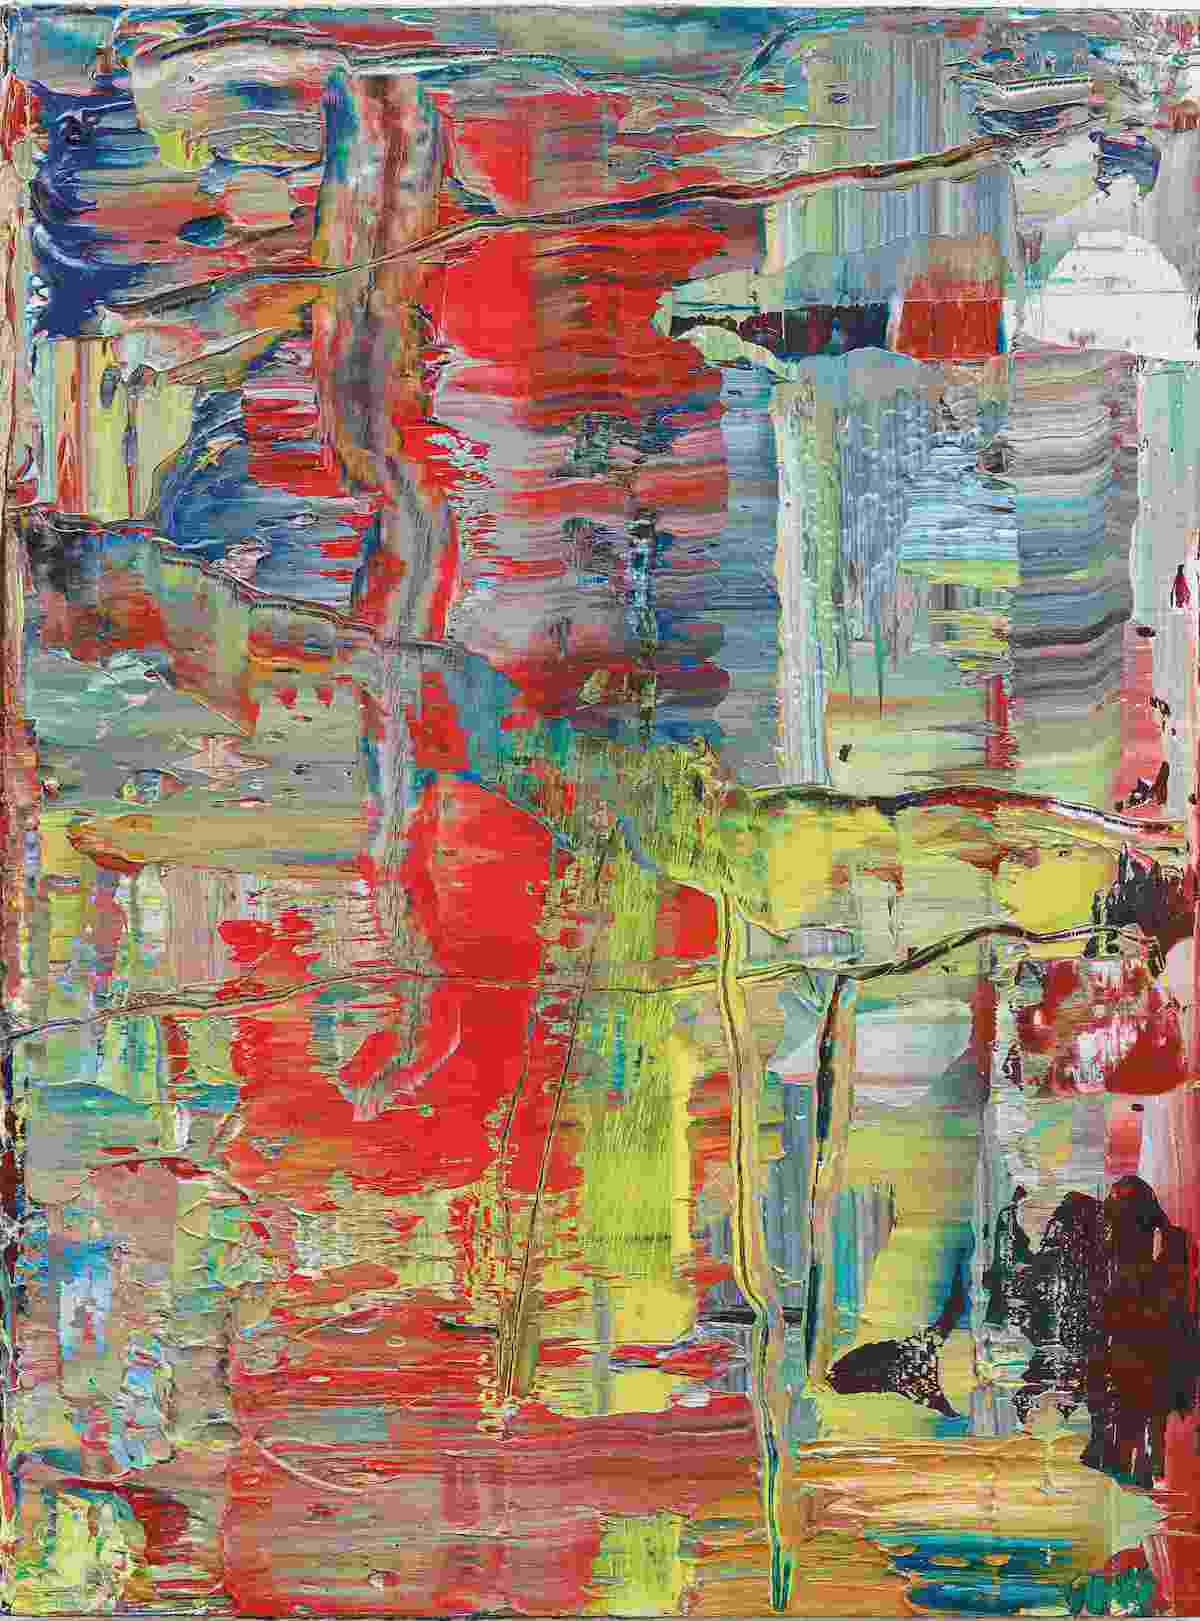 Gerhard RichterAbstraktes Bild (944-2), 2016Öl auf Holz40 x 30 cmLeihgabe der Gerhard Richter Kunststiftung© Gerhard Richter 2023 (31032023)